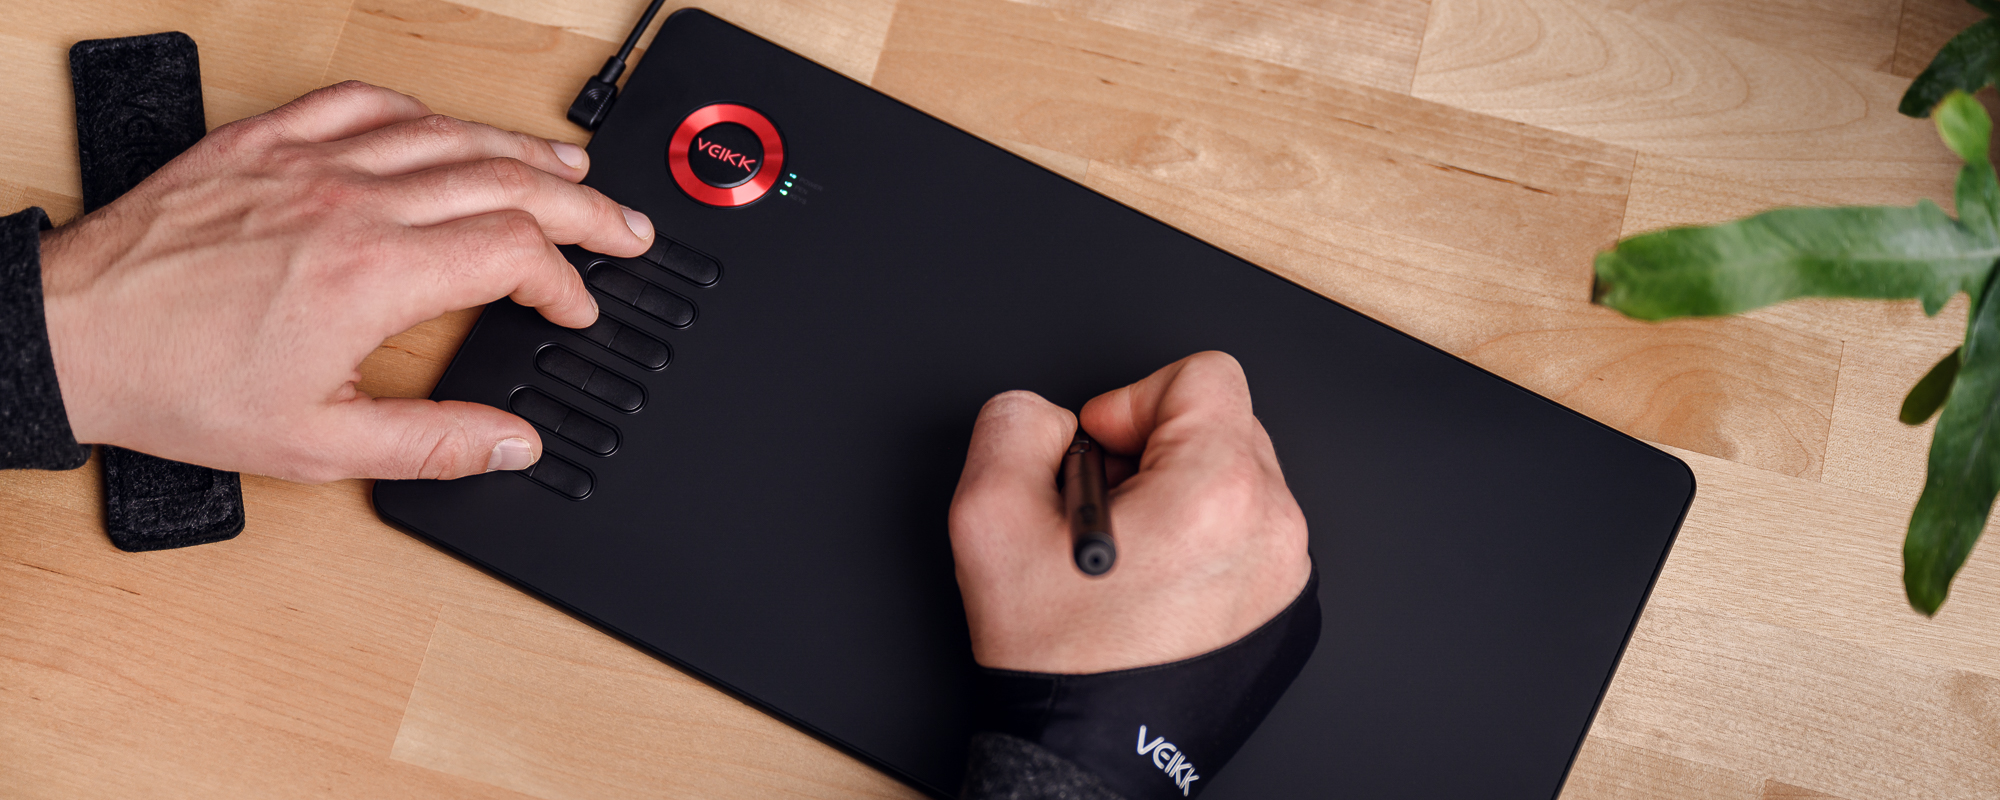 Photo - Tablette graphique Veikk A15 Pro sur un bureau marron clair, la main gauche de l'homme appuie sur une touche de fonction, la main droite actionne le stylo.